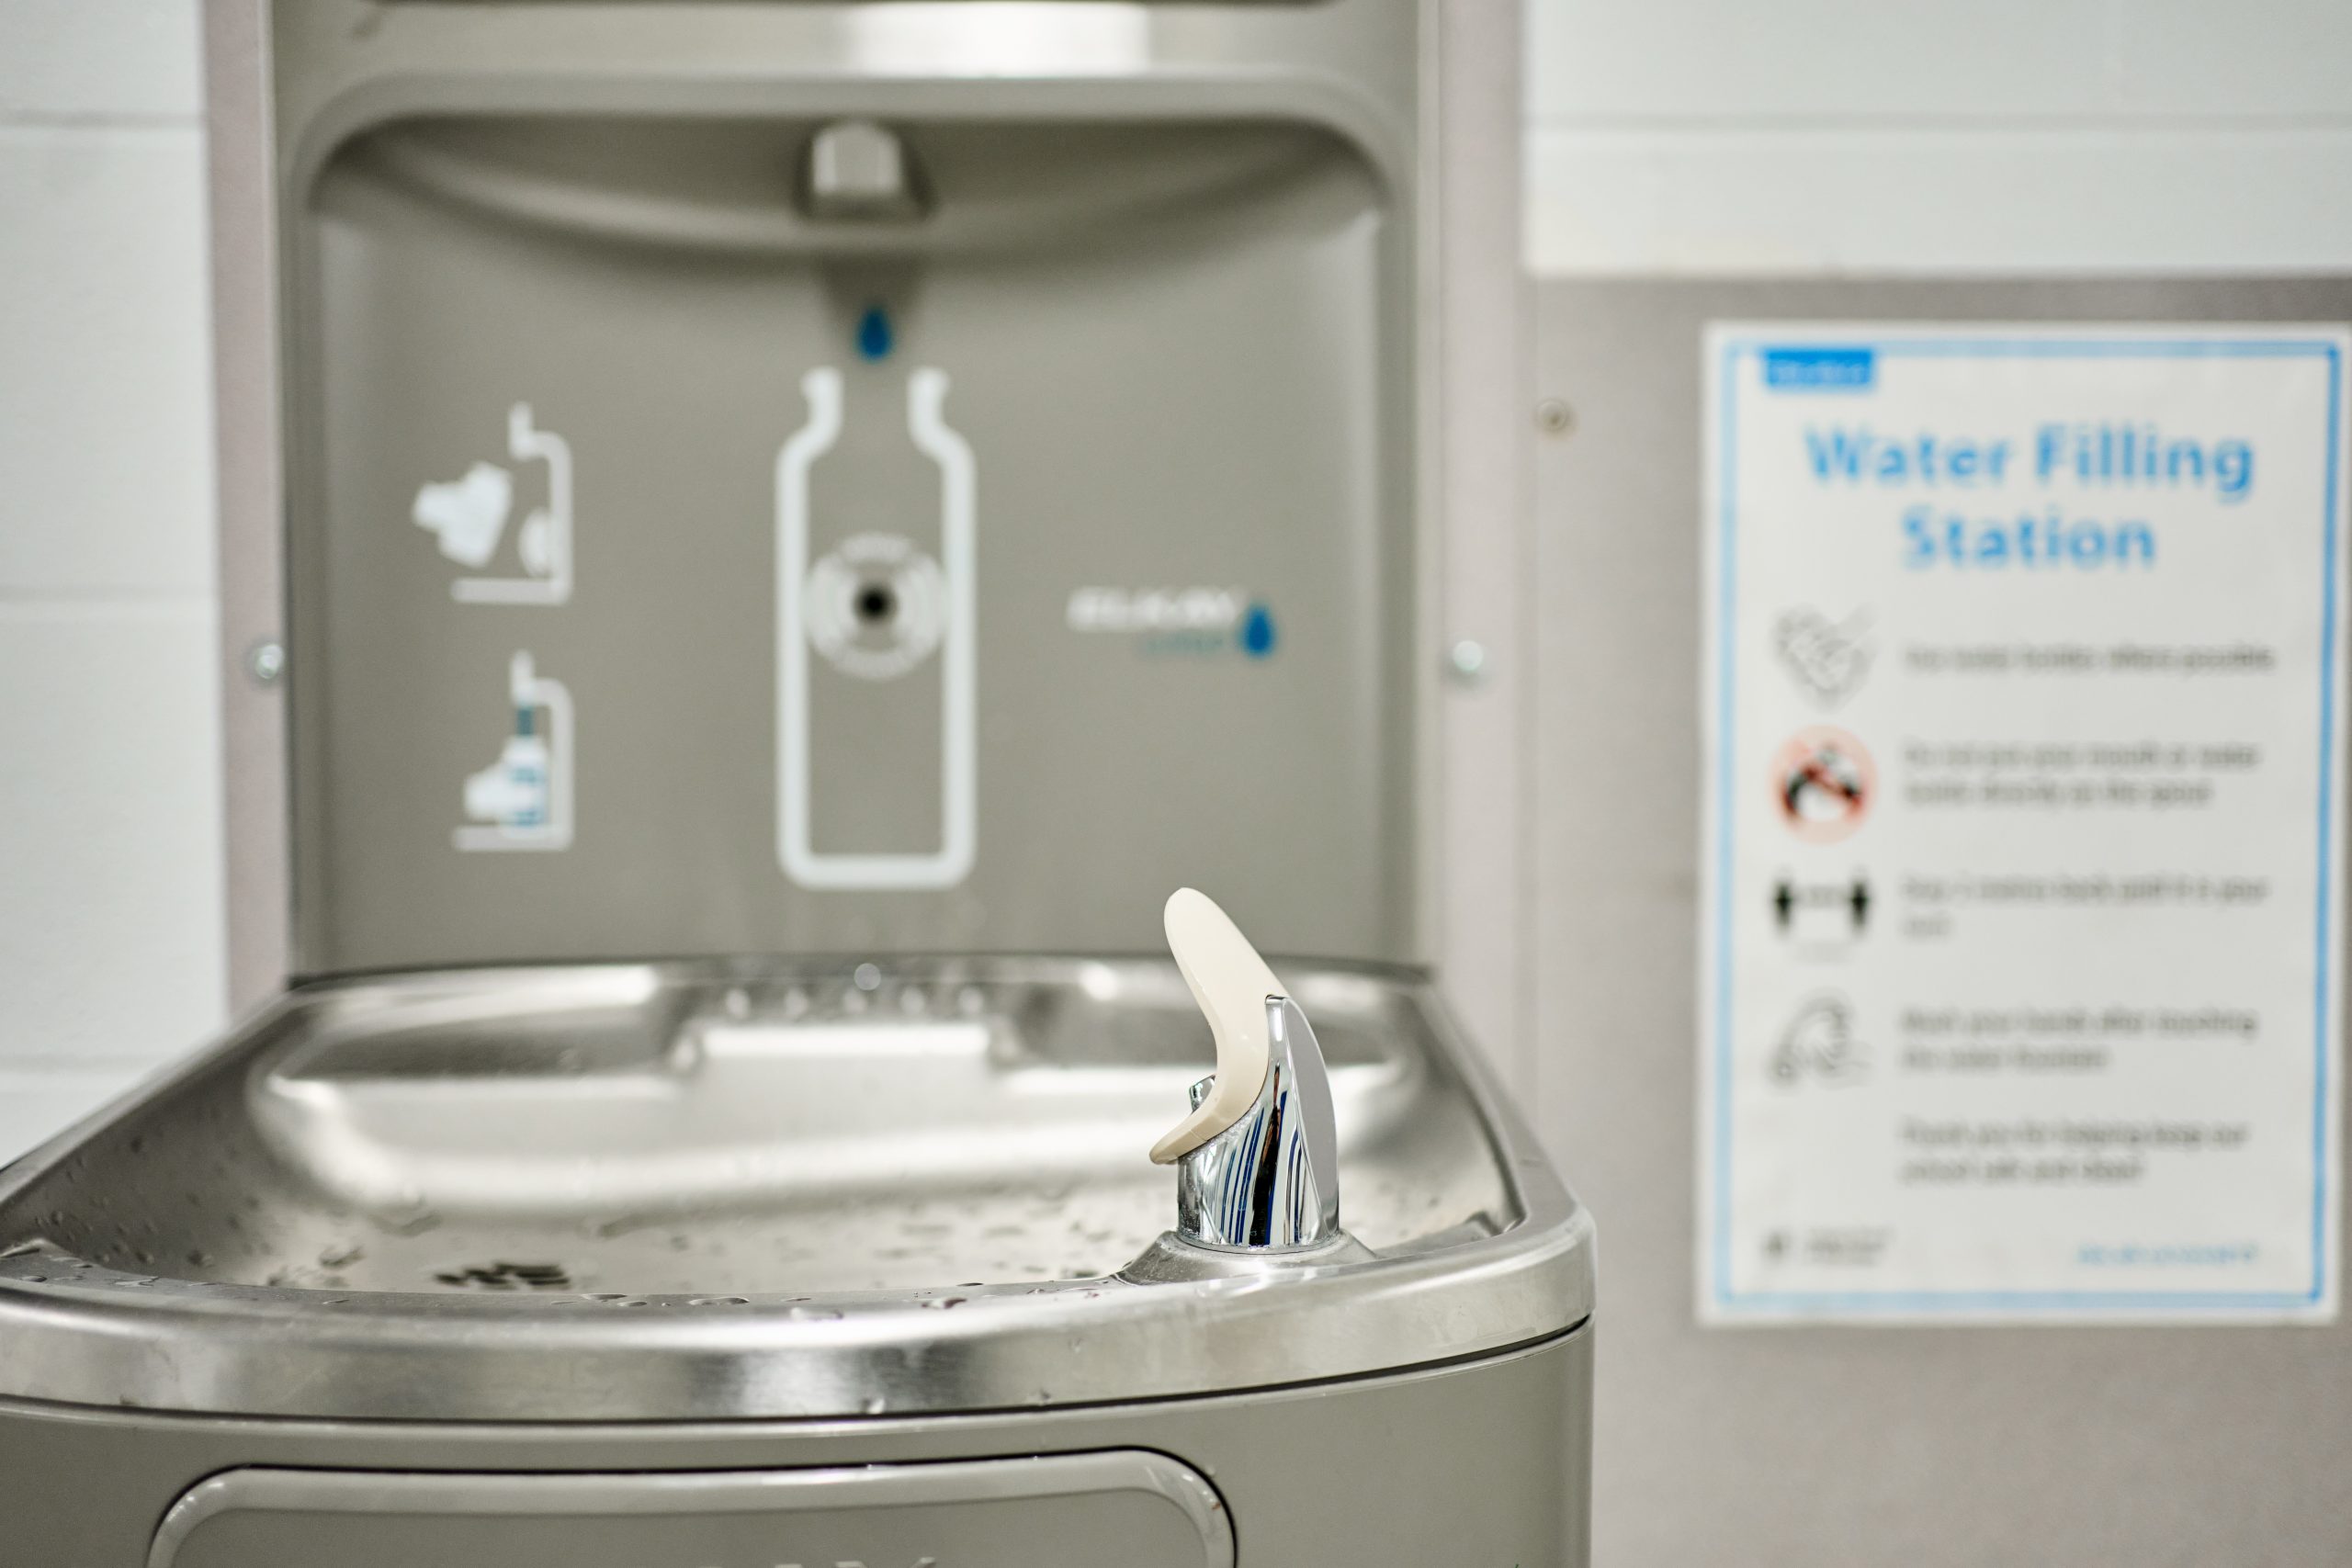 Water dispenser in a school